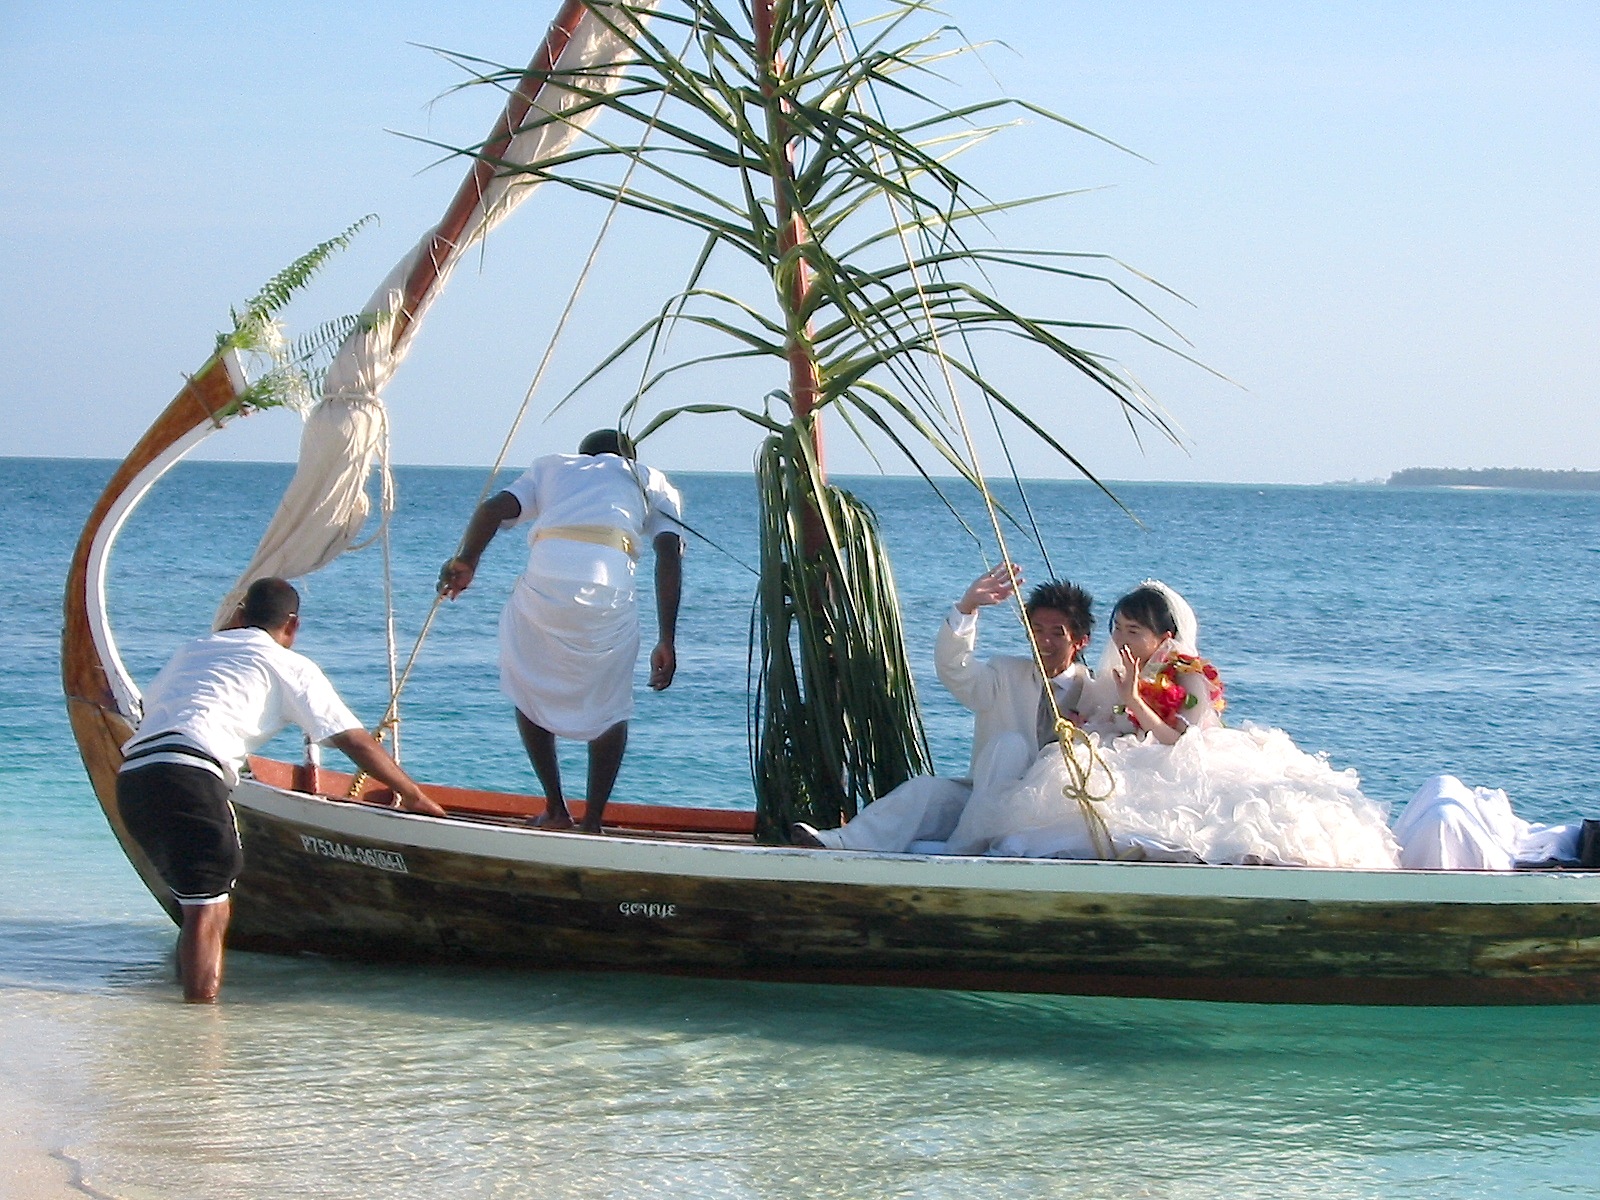 Kanuhura, île-joyau situé dans l’atoll des Maldives, peut être décrite comme l’expérience ‘Island chic’ par excellence. Les couples peuvent vivre une expérience unique de vie insulaire privilégiant le style de vie décontracté chic avec des touches contemporaines et un service irréprochable.